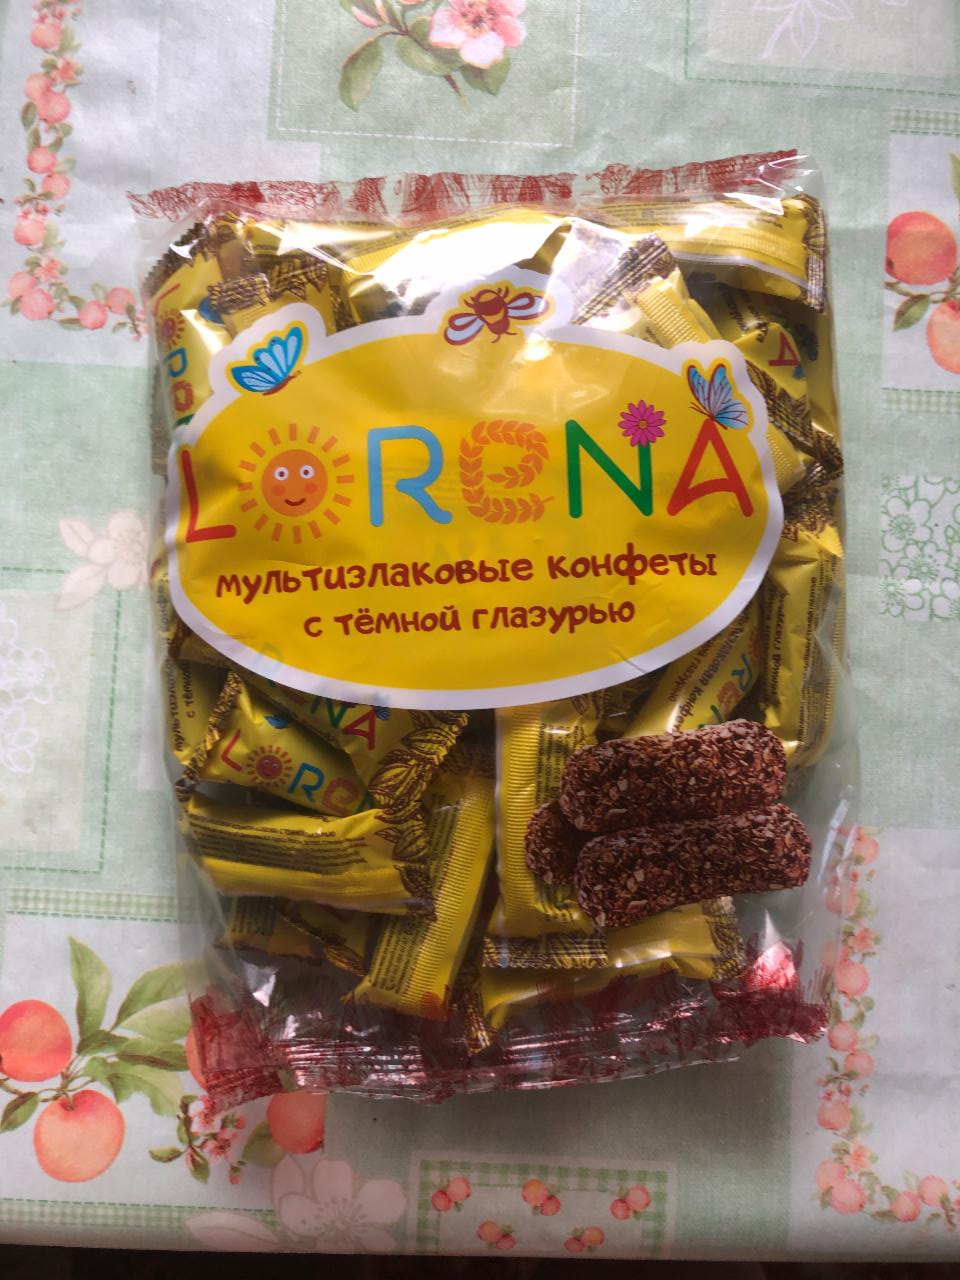 Фото - Мультизлаковые конфеты с темной глазурью Lorena